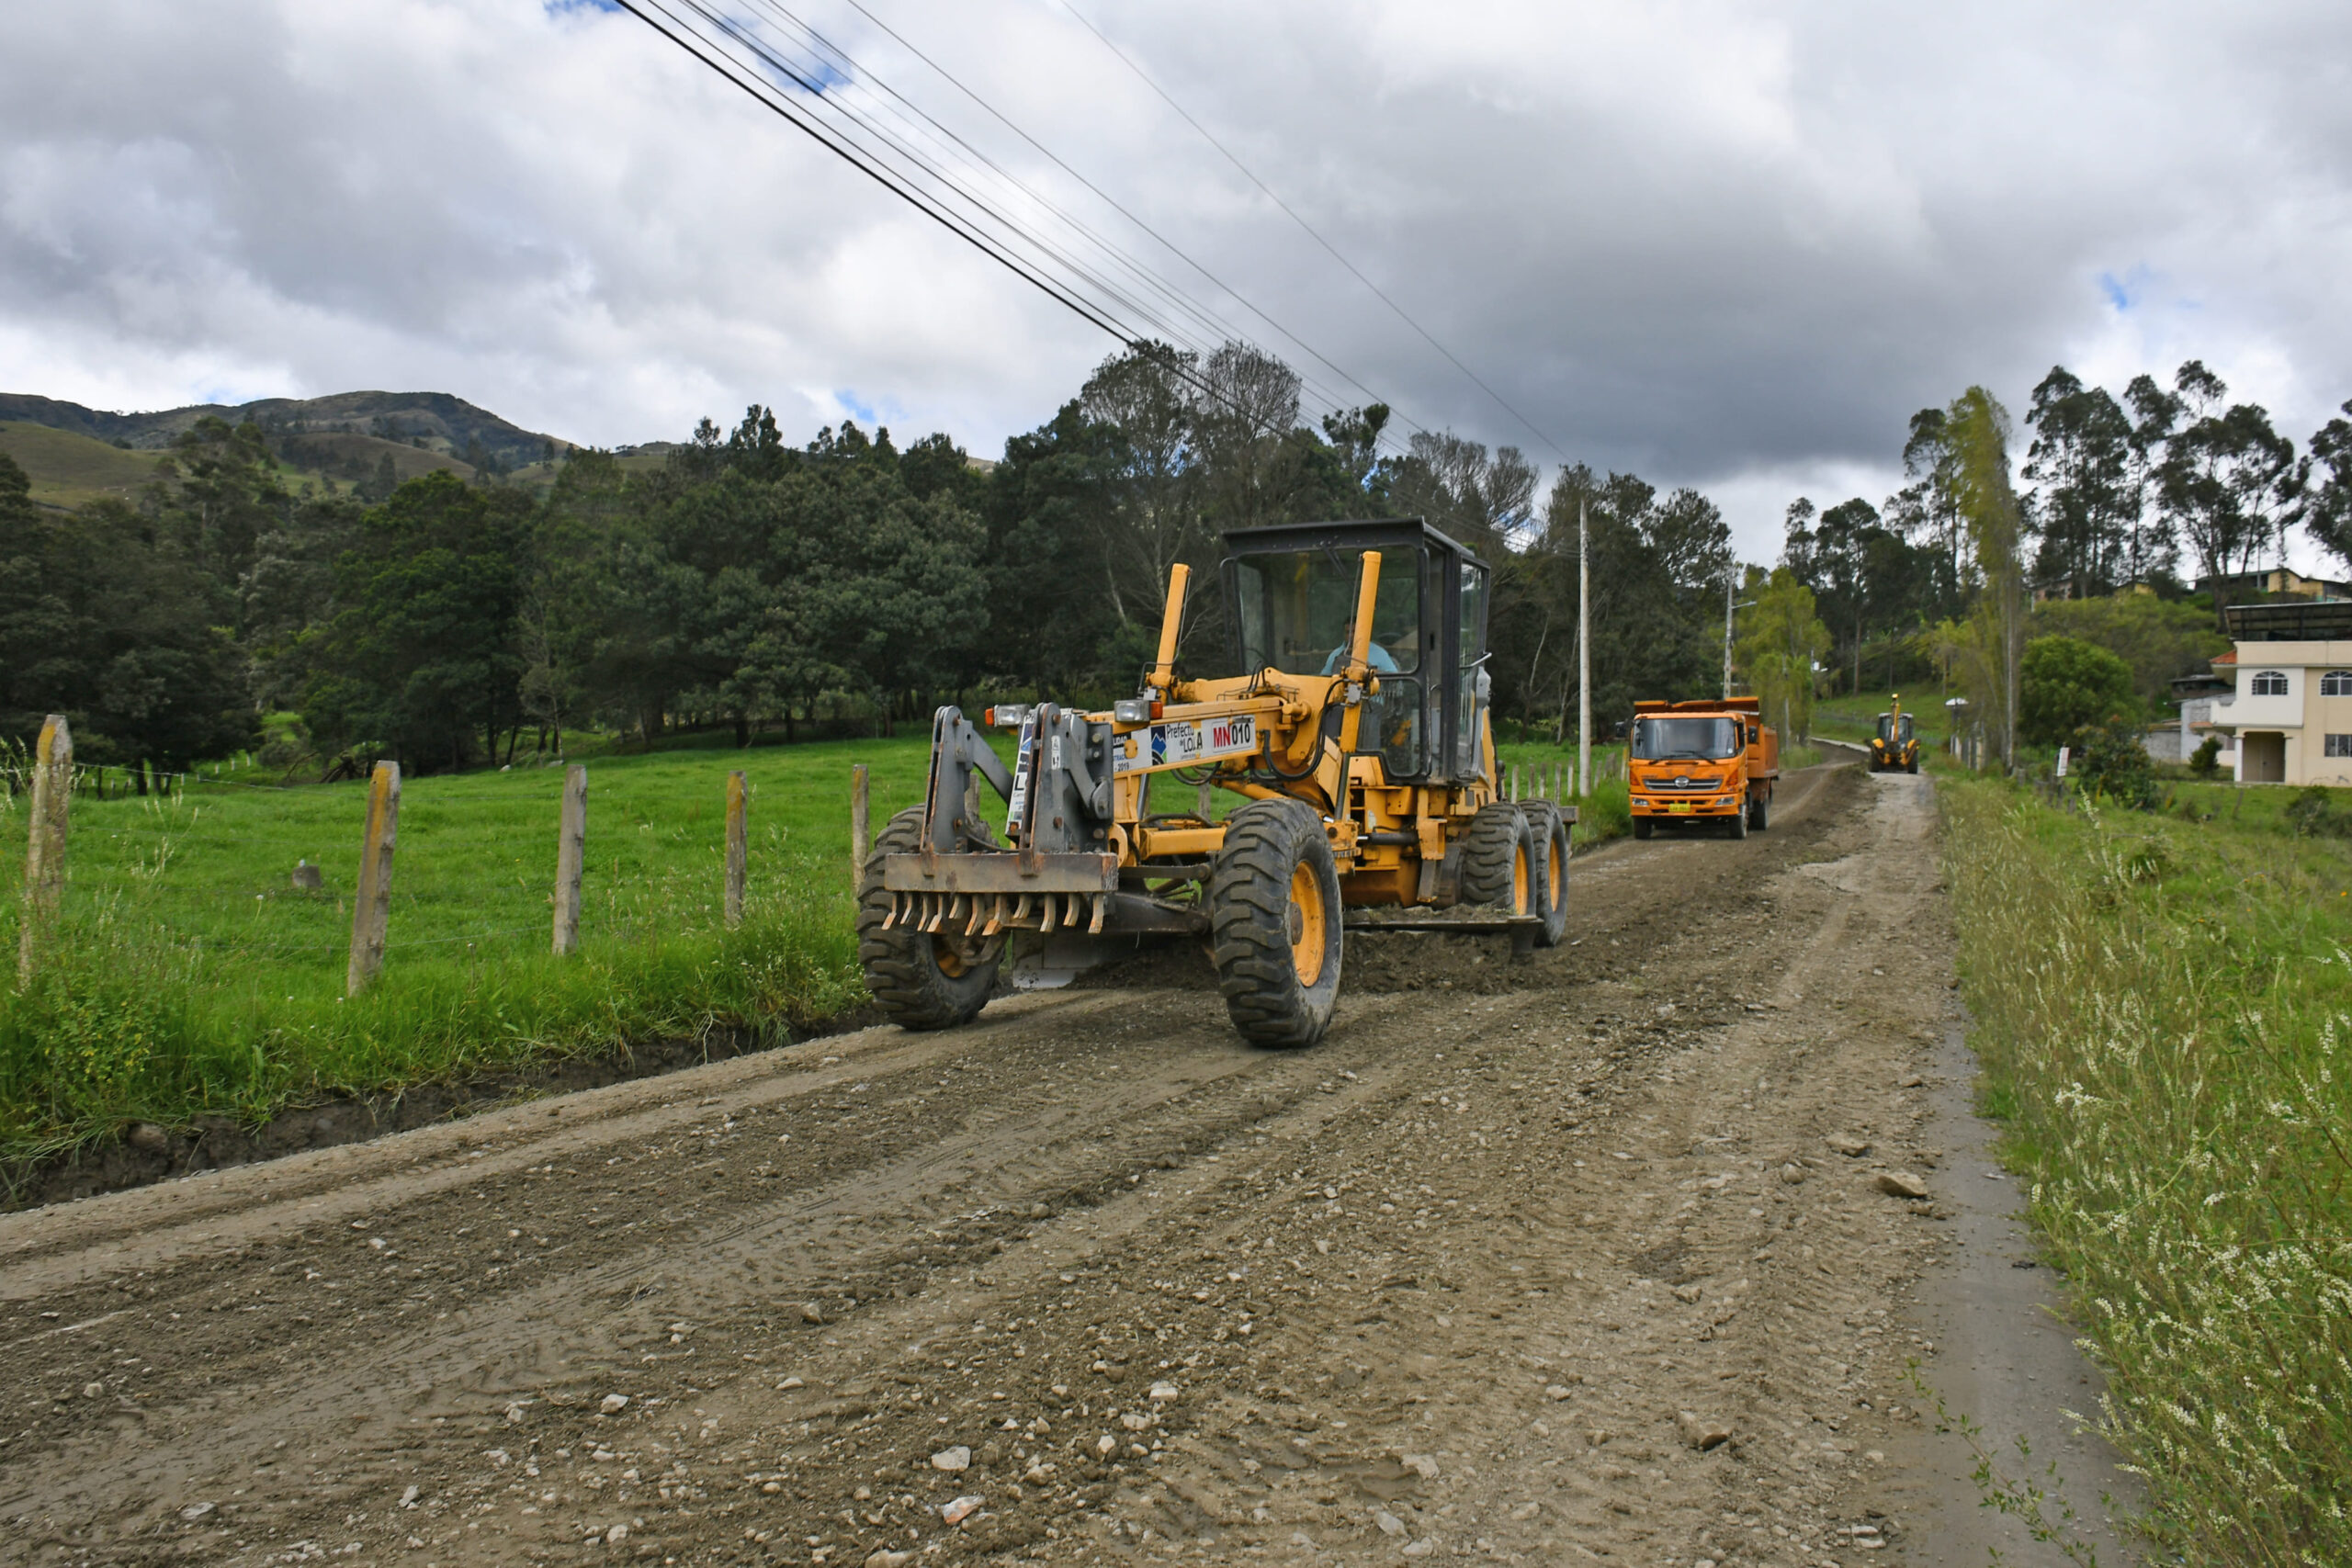 Prefectura y Municipio dan mantenimiento a la vía Motupe - Zalapa